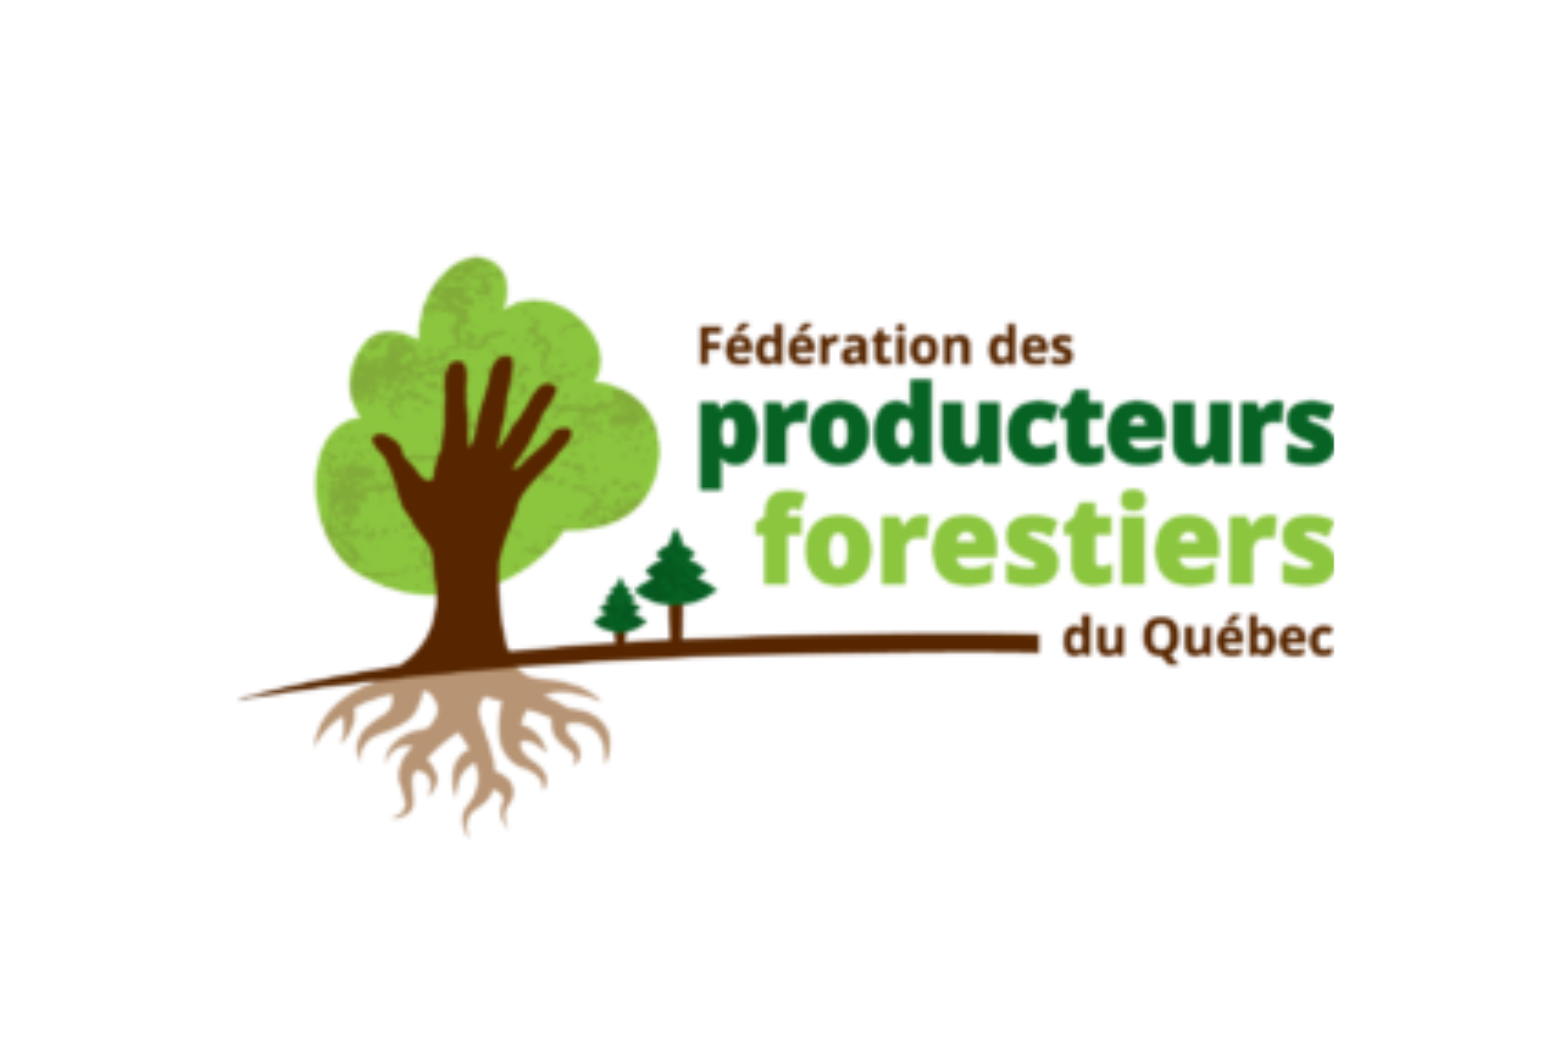 Portrait économique des activités sylvicoles et de la transformation du bois des forêts privées